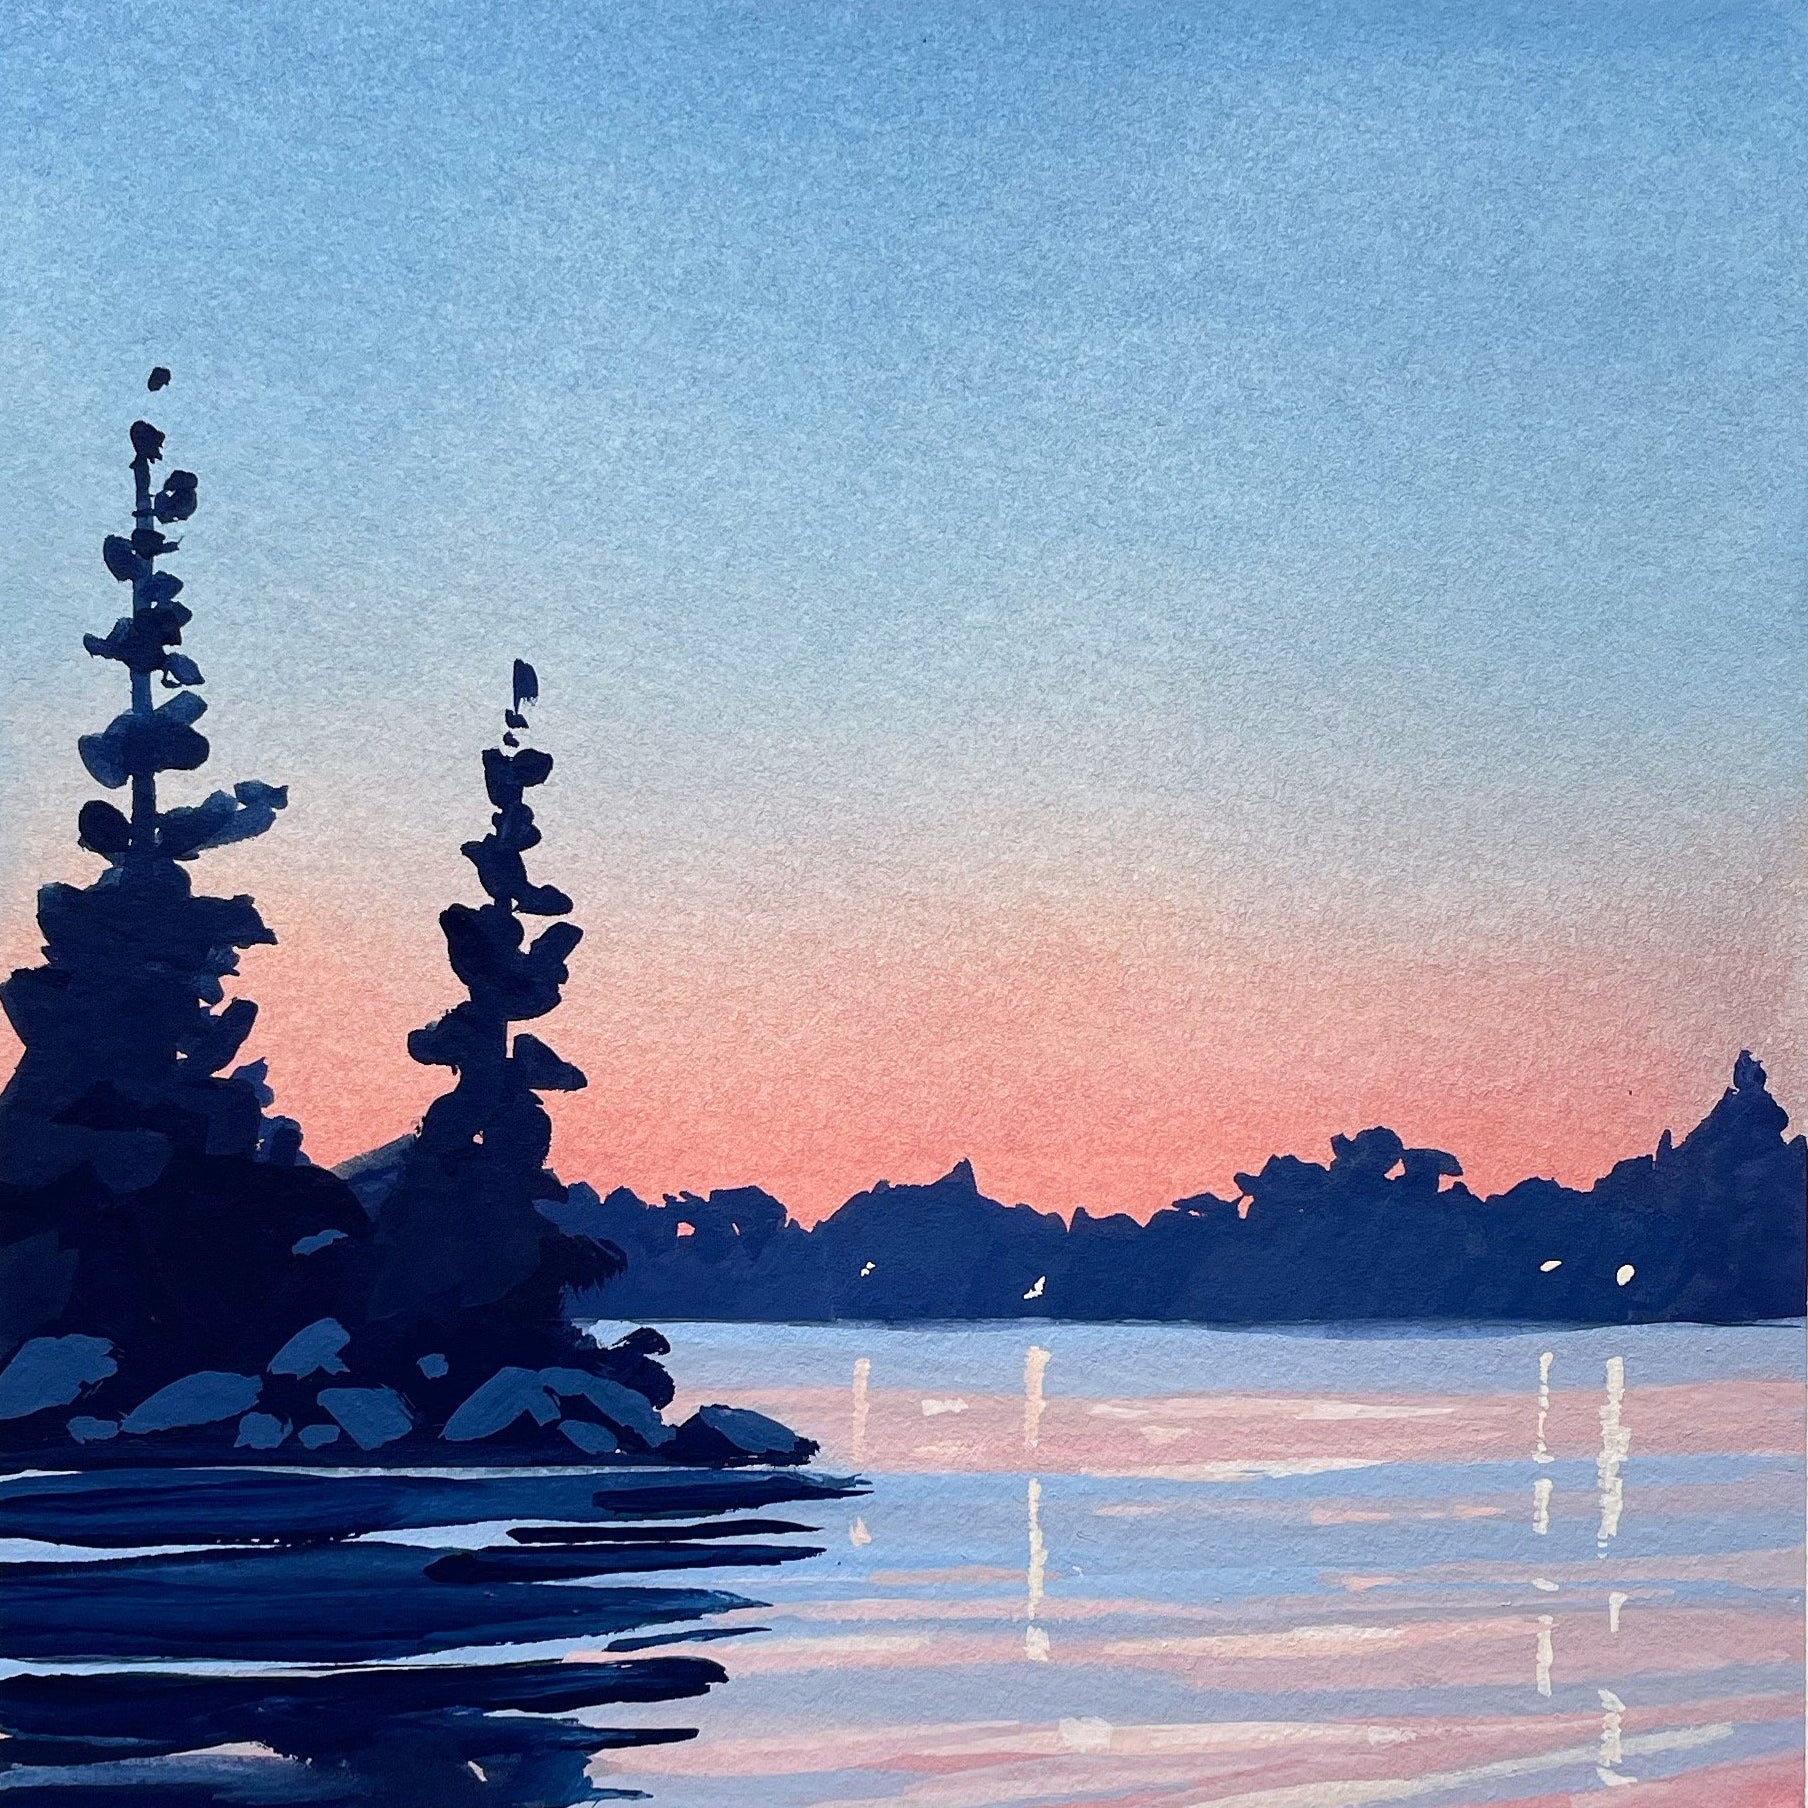 Mountain Sunset View' Gouache Landscape, an art print by Kelley Vivian -  INPRNT